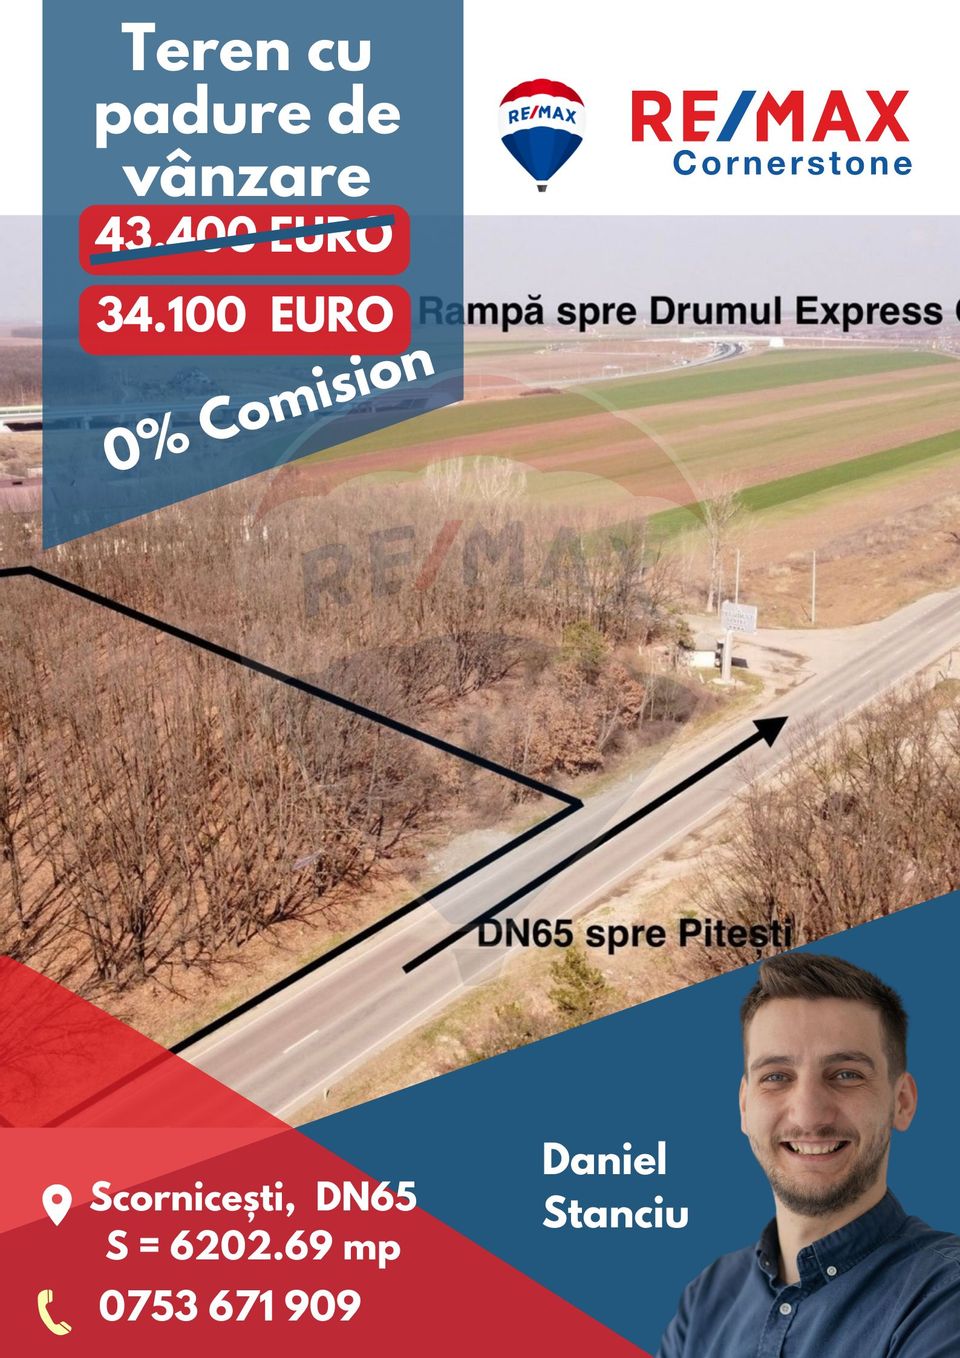 Teren de vânzare 6,202.69mp DN65 Drumul Expres Pitești-Craiova